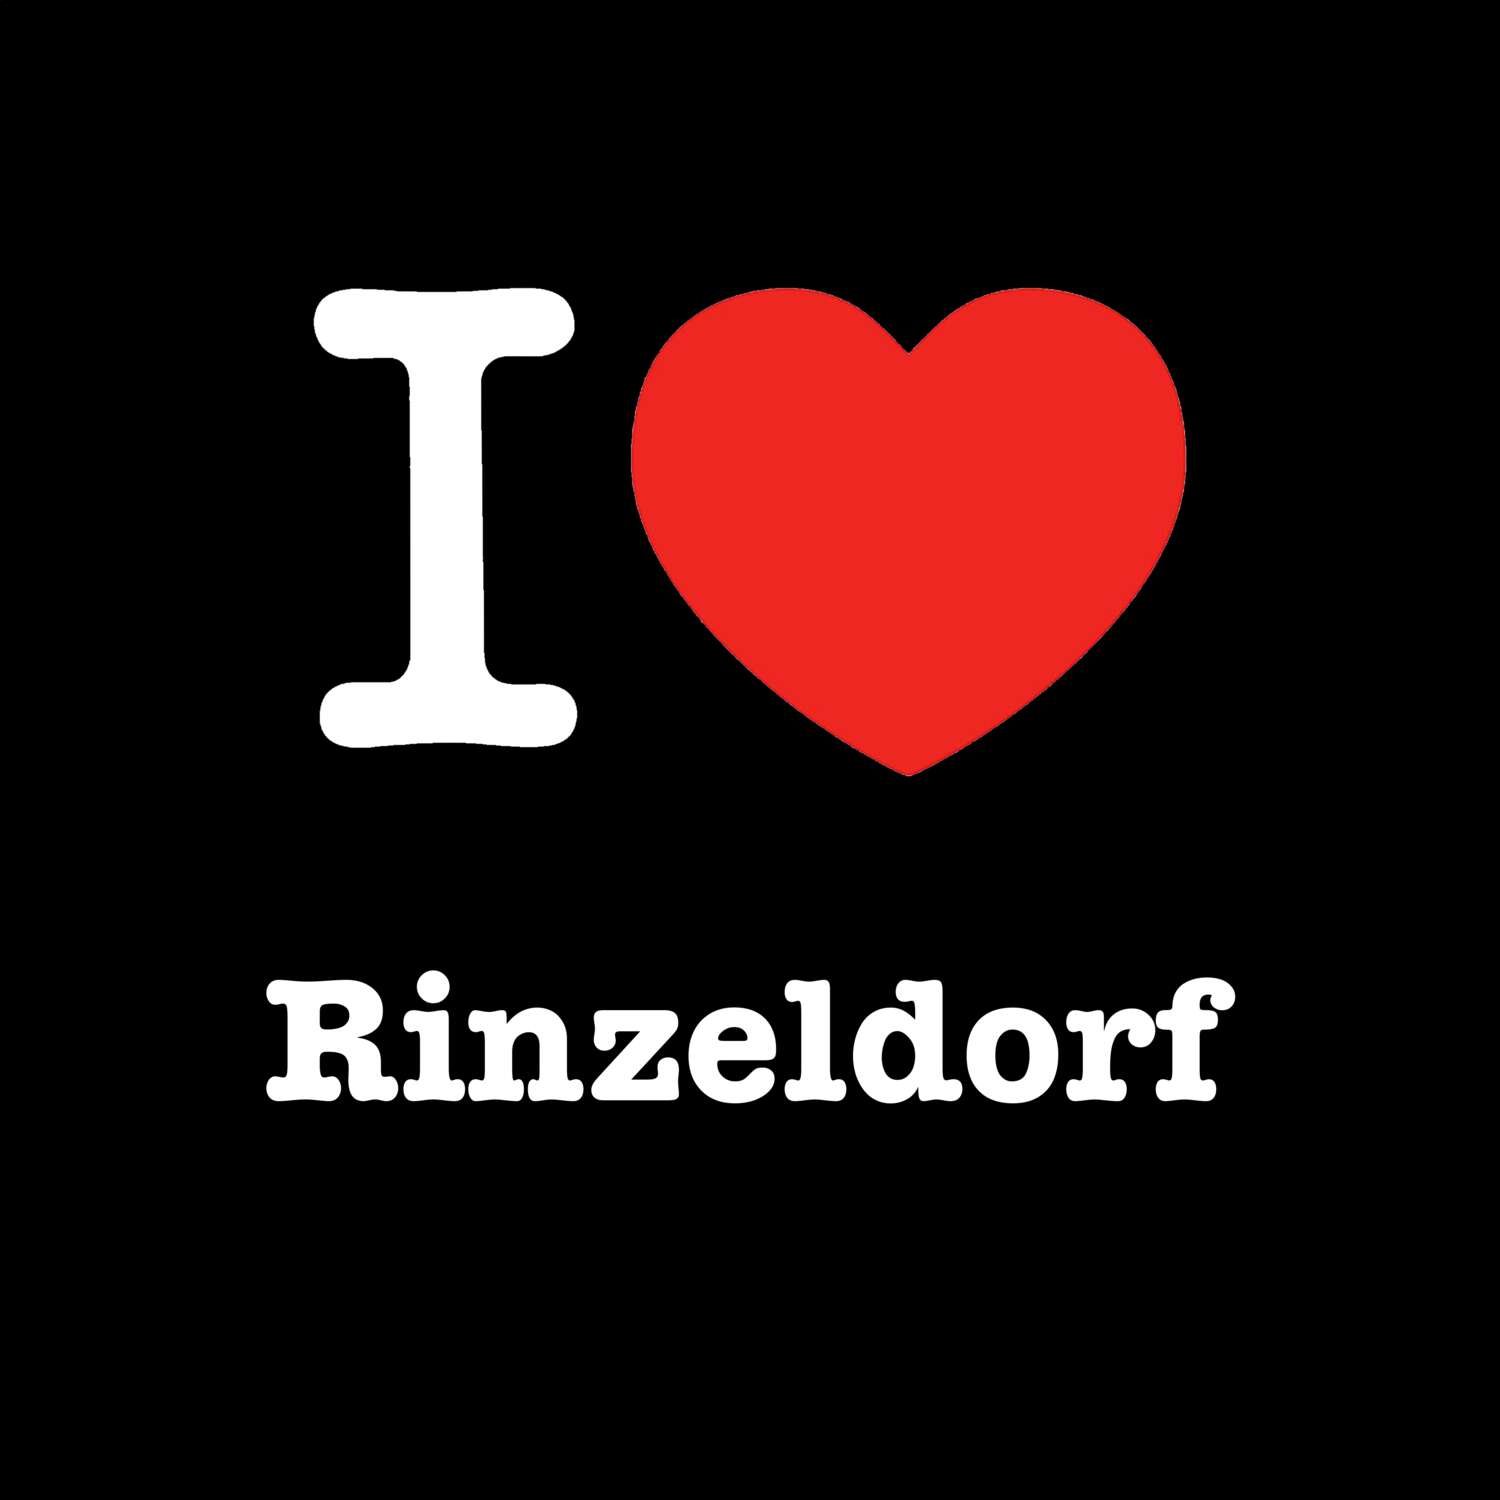 Rinzeldorf T-Shirt »I love«